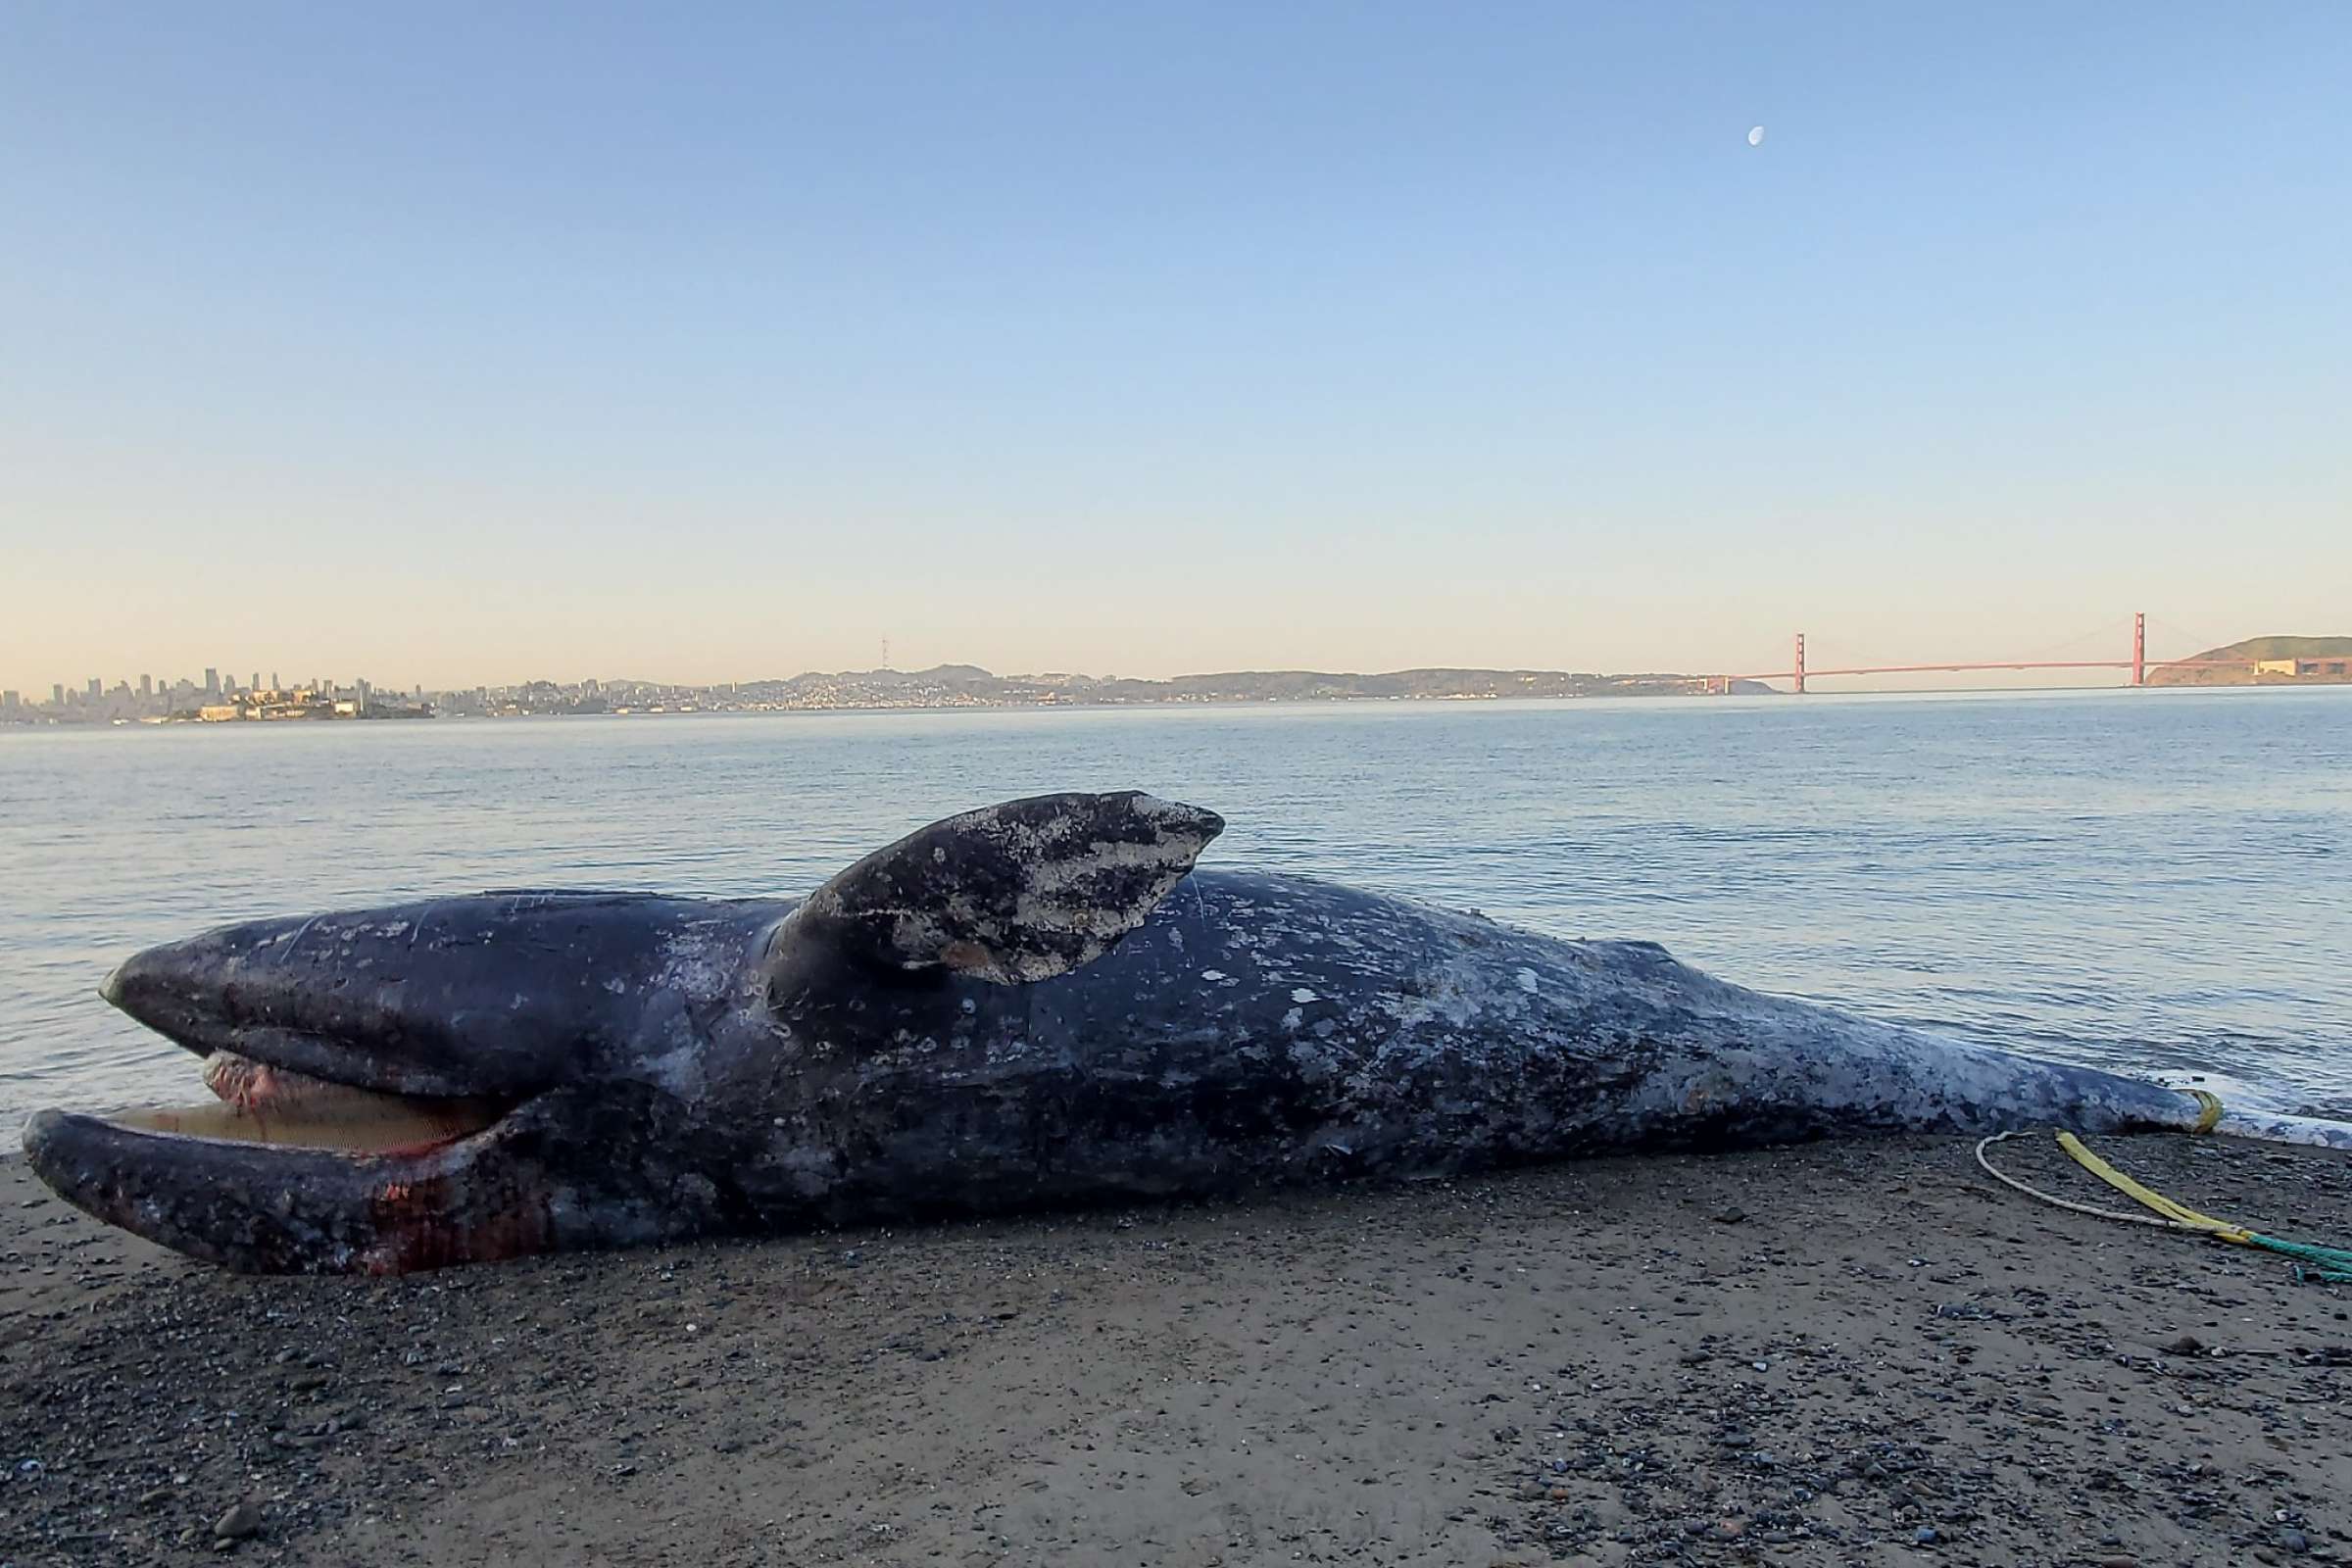 Kilenc nap alatt négy szürke bálna tetemét sodorta partra a víz a San Franciscó-i öbölben